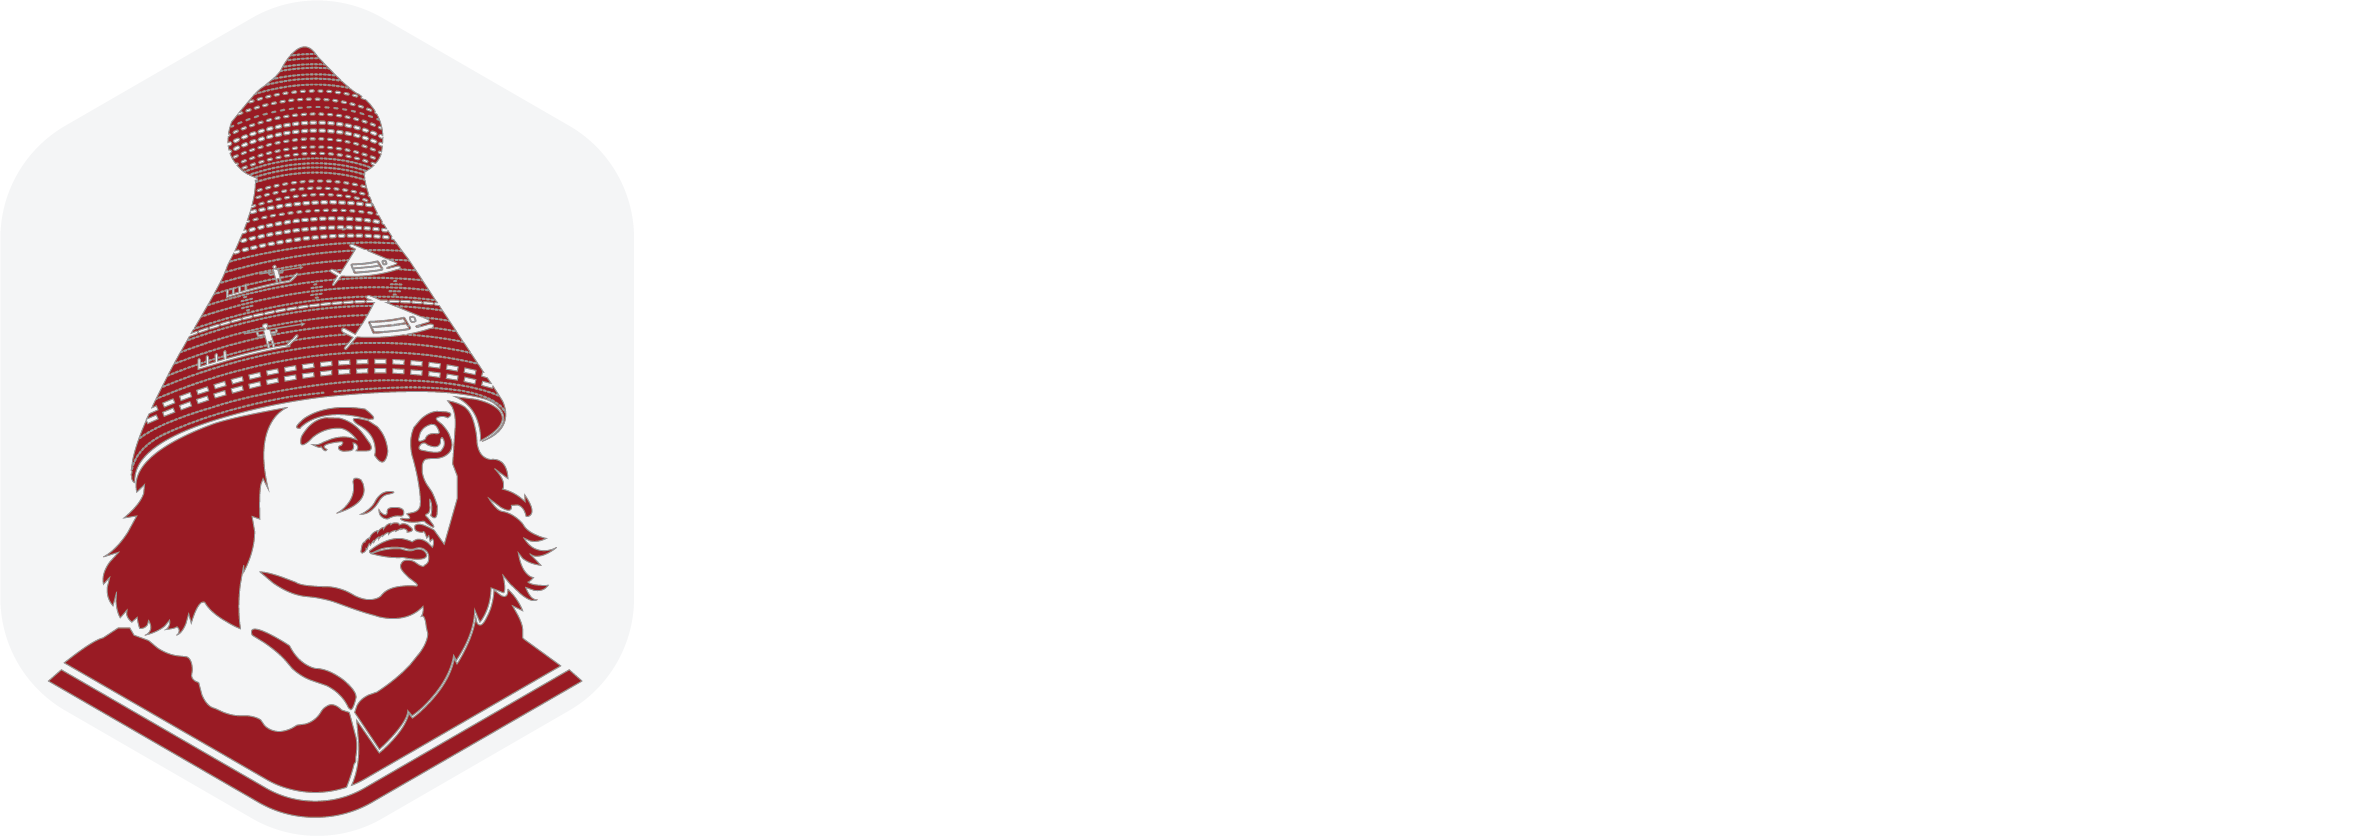 Mowachaht-Muchalaht First Nation